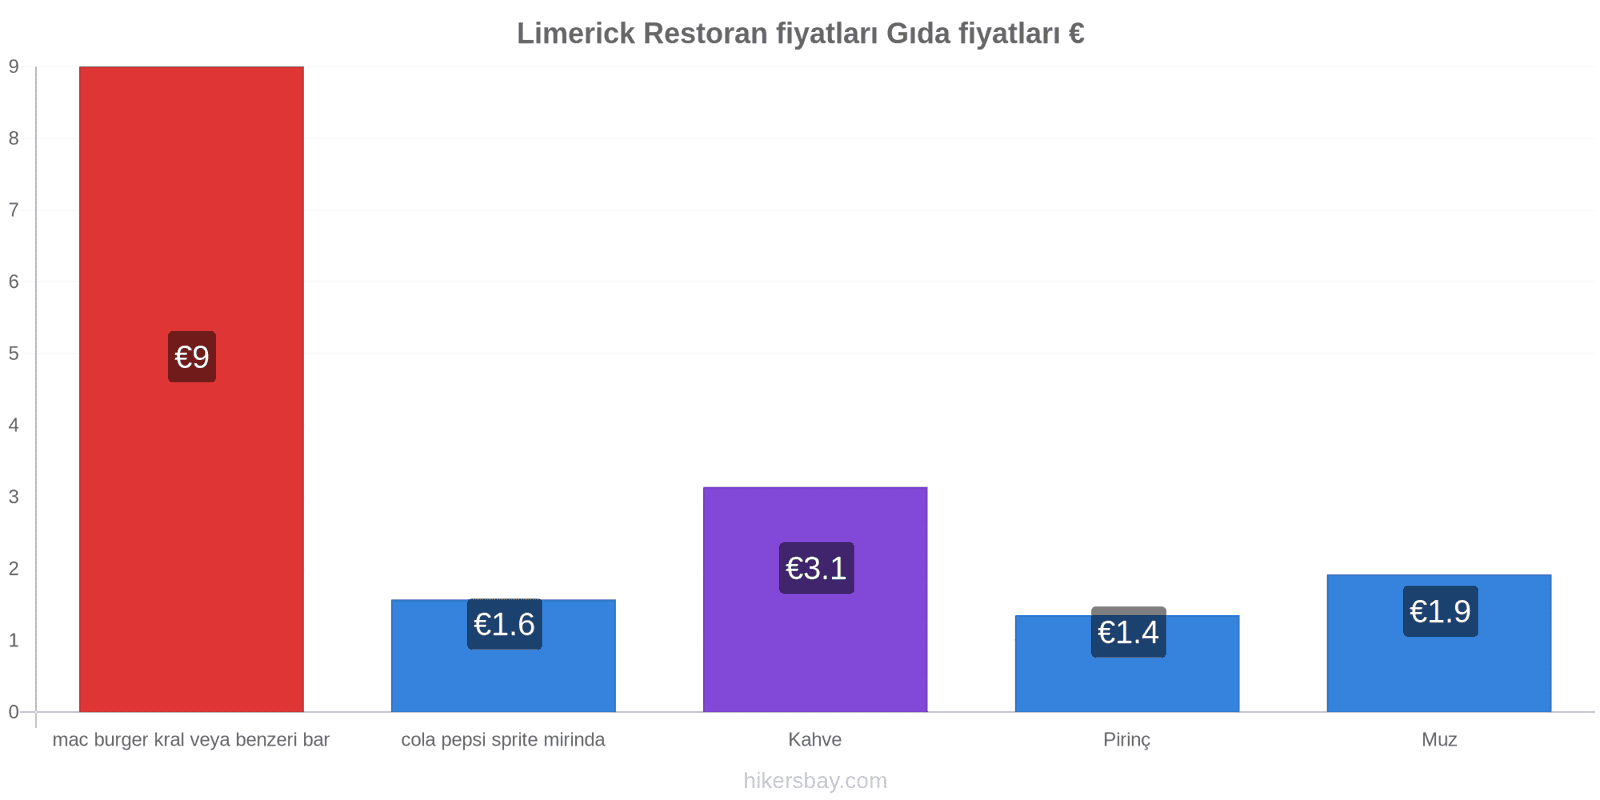 Limerick fiyat değişiklikleri hikersbay.com